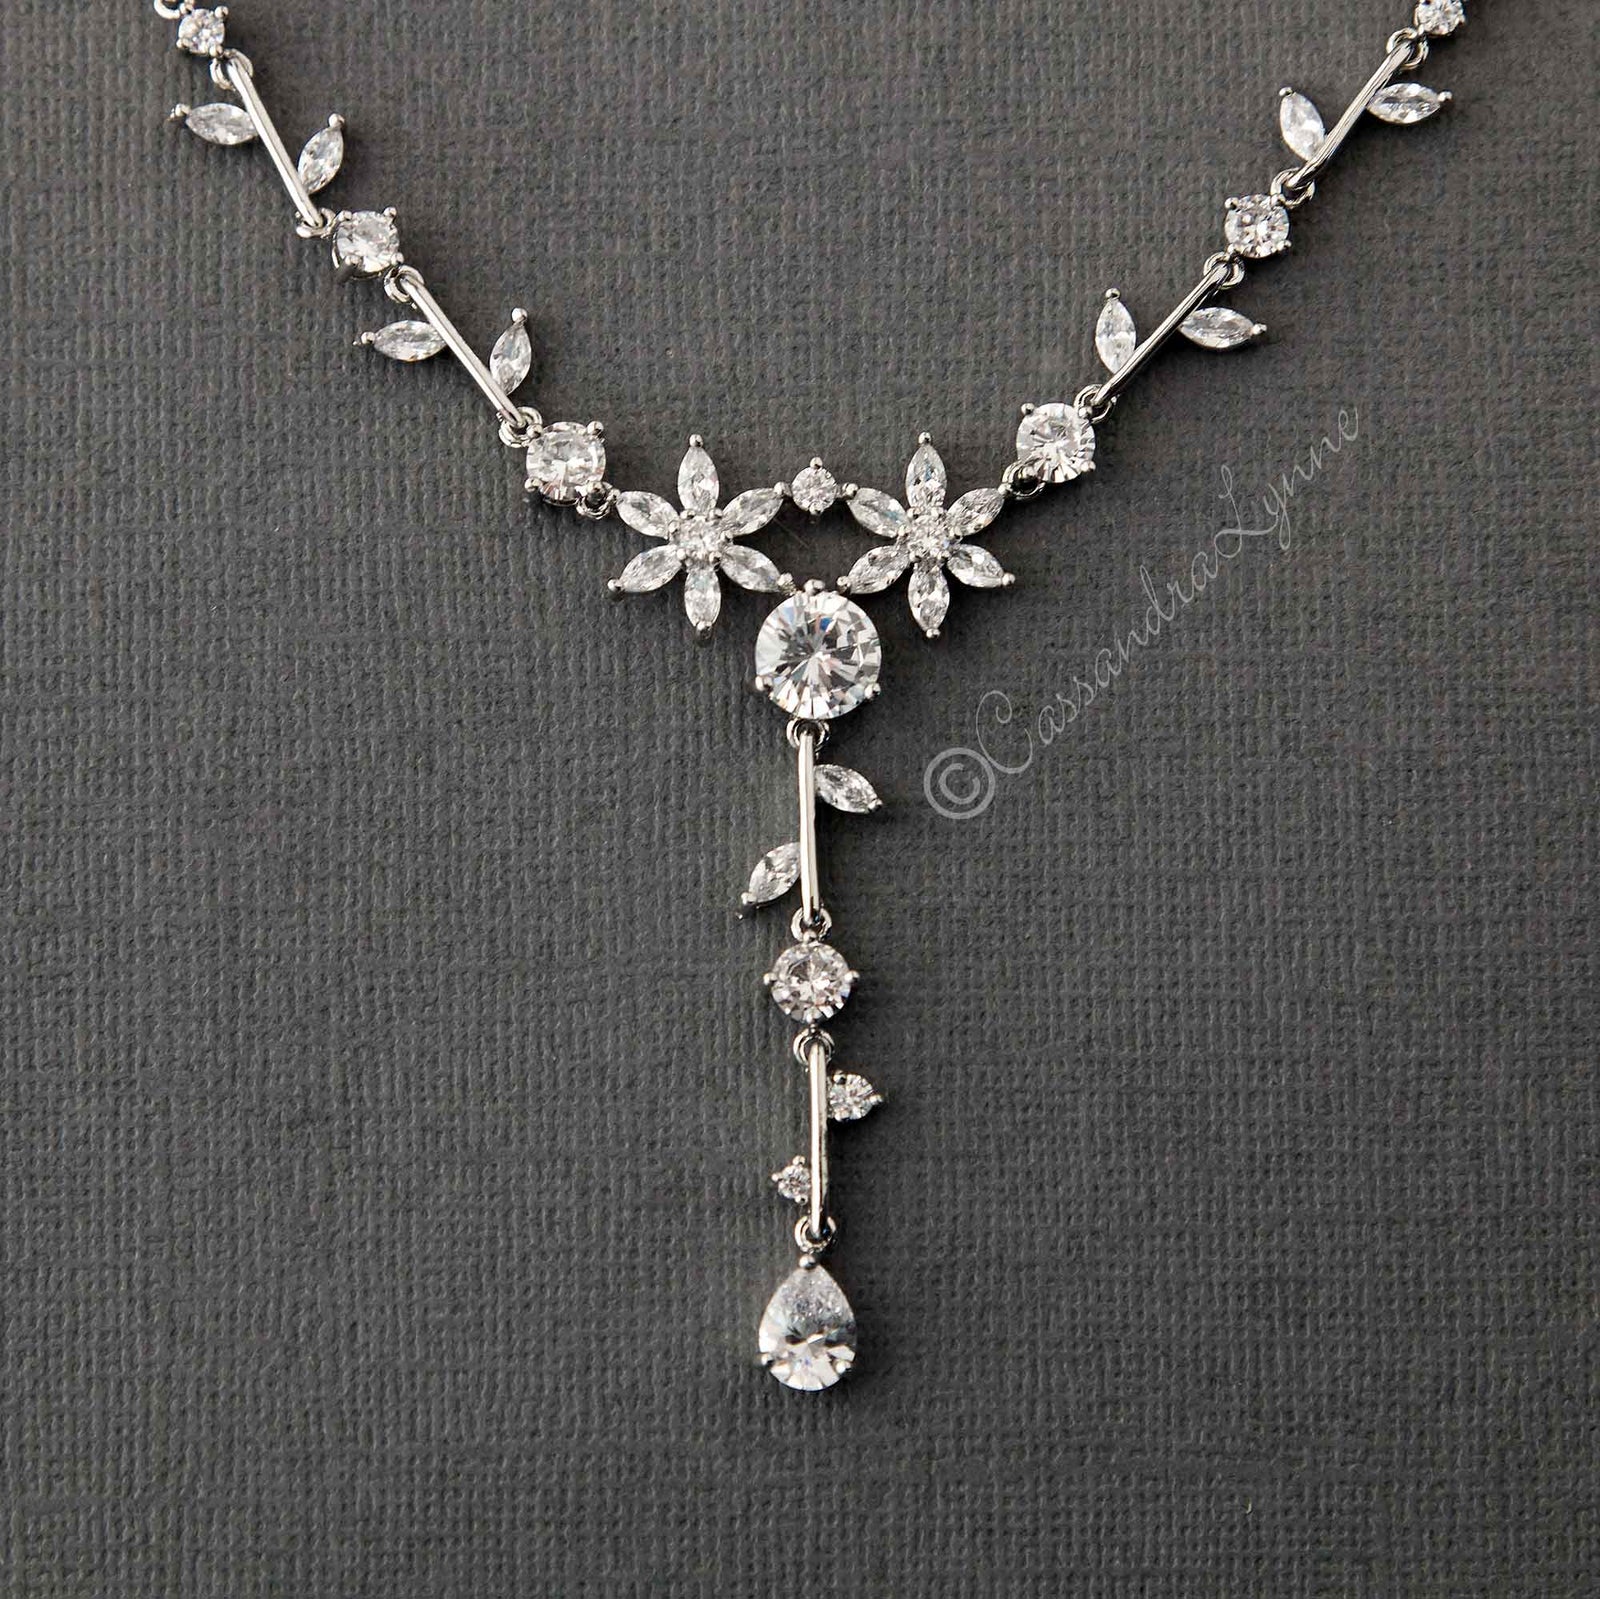 Sapphire CZ Diamond Bridal Necklace, American Diamond Wedding Necklace, Cz  Jewelry, Indian, Pakistani, Punjabi Wedding Jewelry - Etsy | Diamond  necklace wedding, Wedding jewellery necklace, Bridal necklace